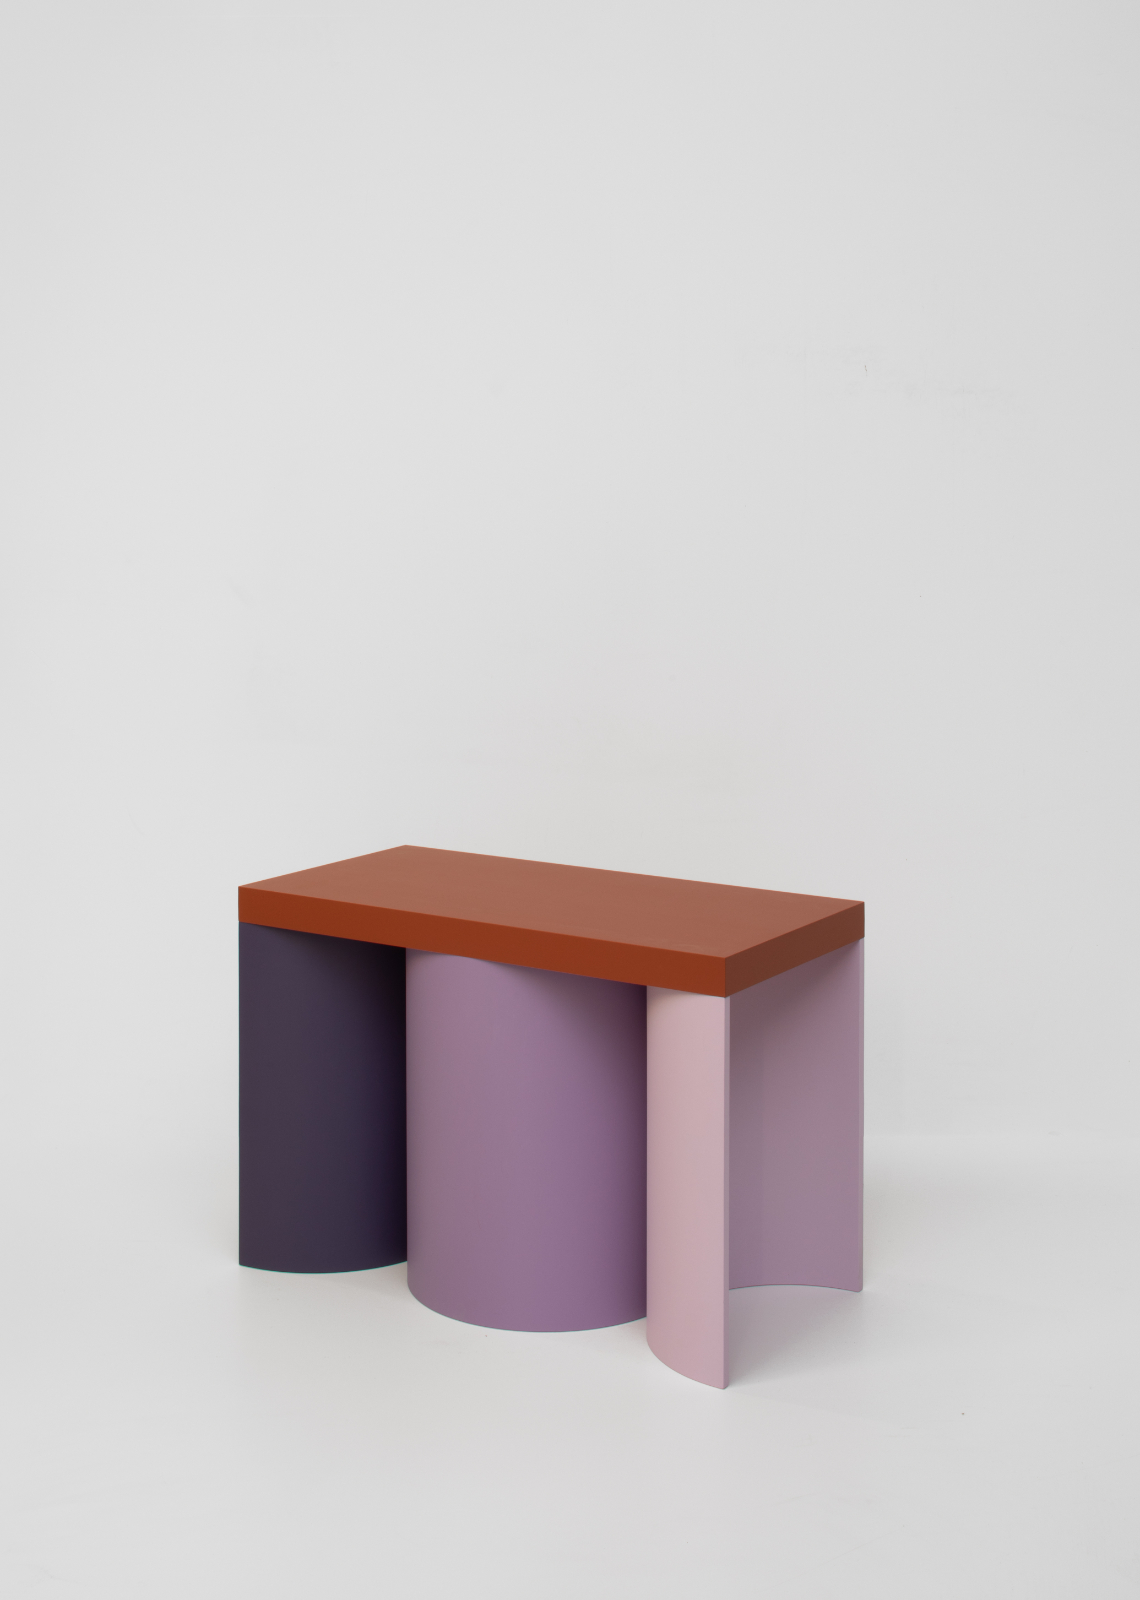 stools furniture exterior colour design public